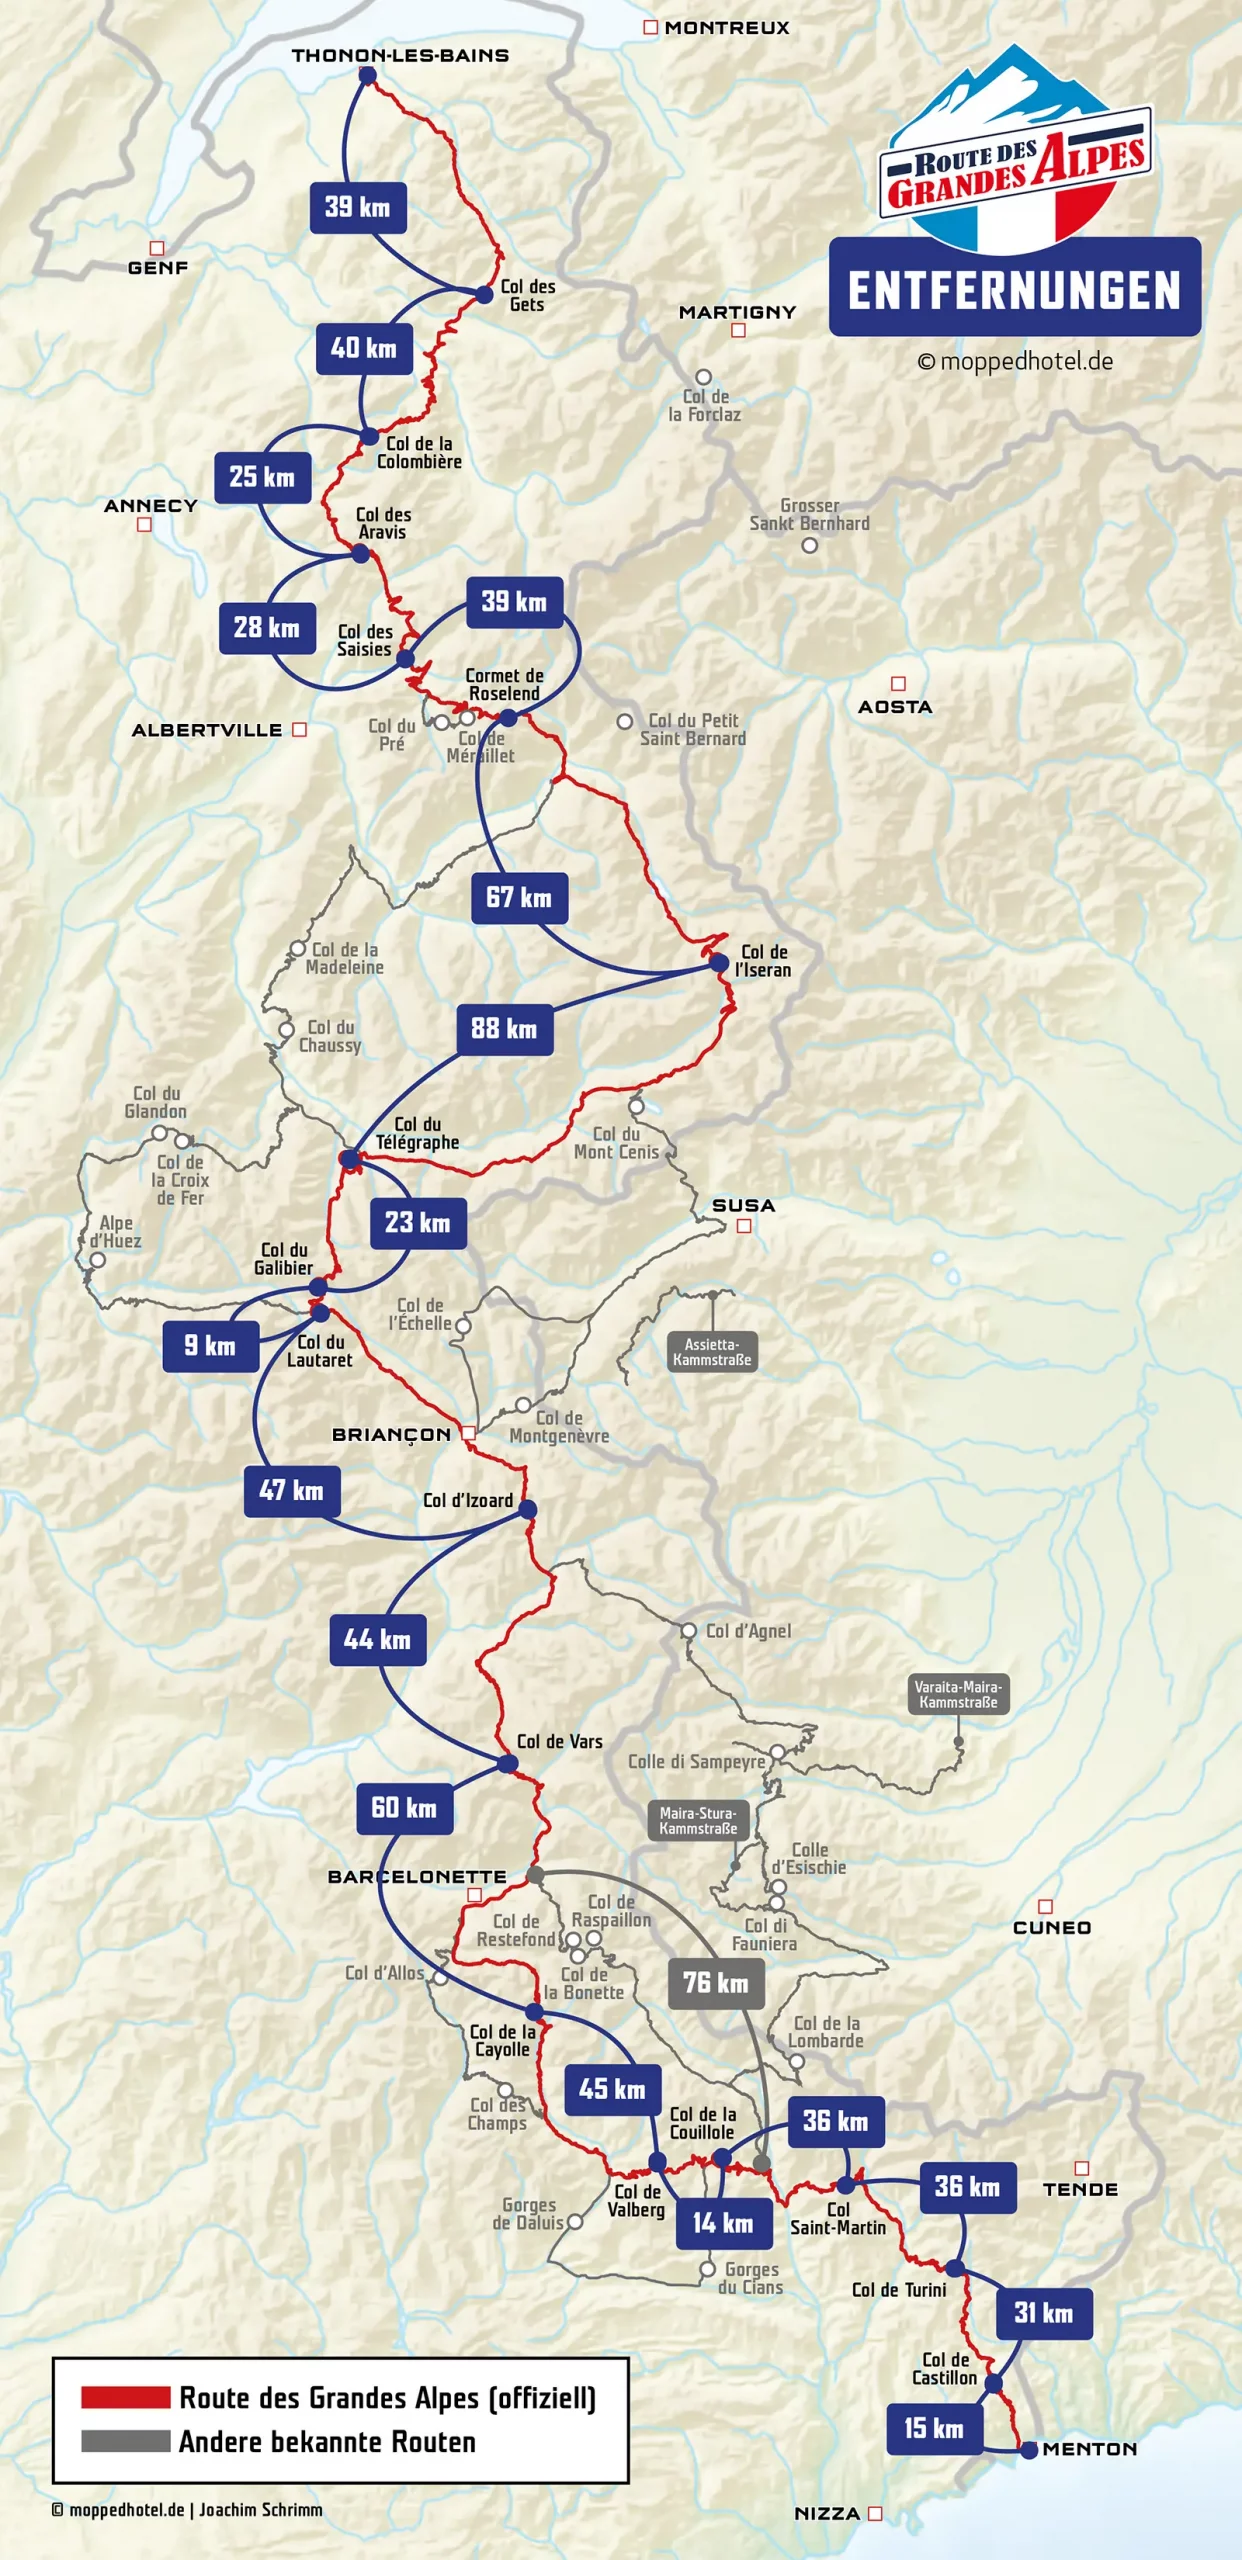 Entfernungen auf der Route des Grandes Alpes